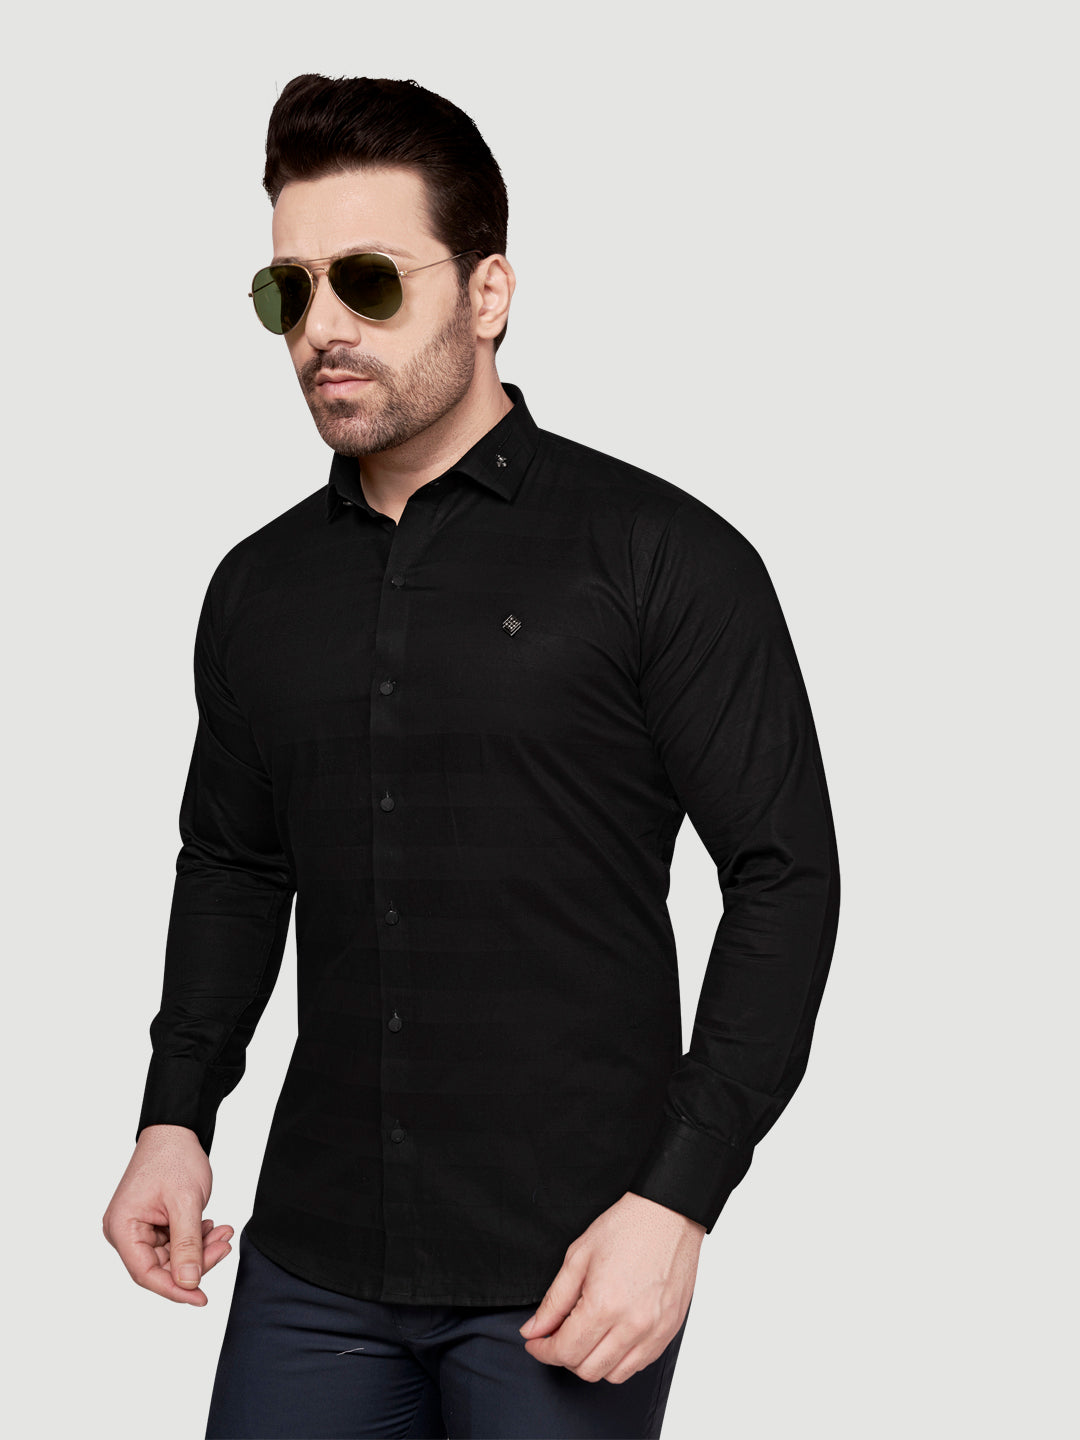 Black and White Men's Weft Designer Shirt Black